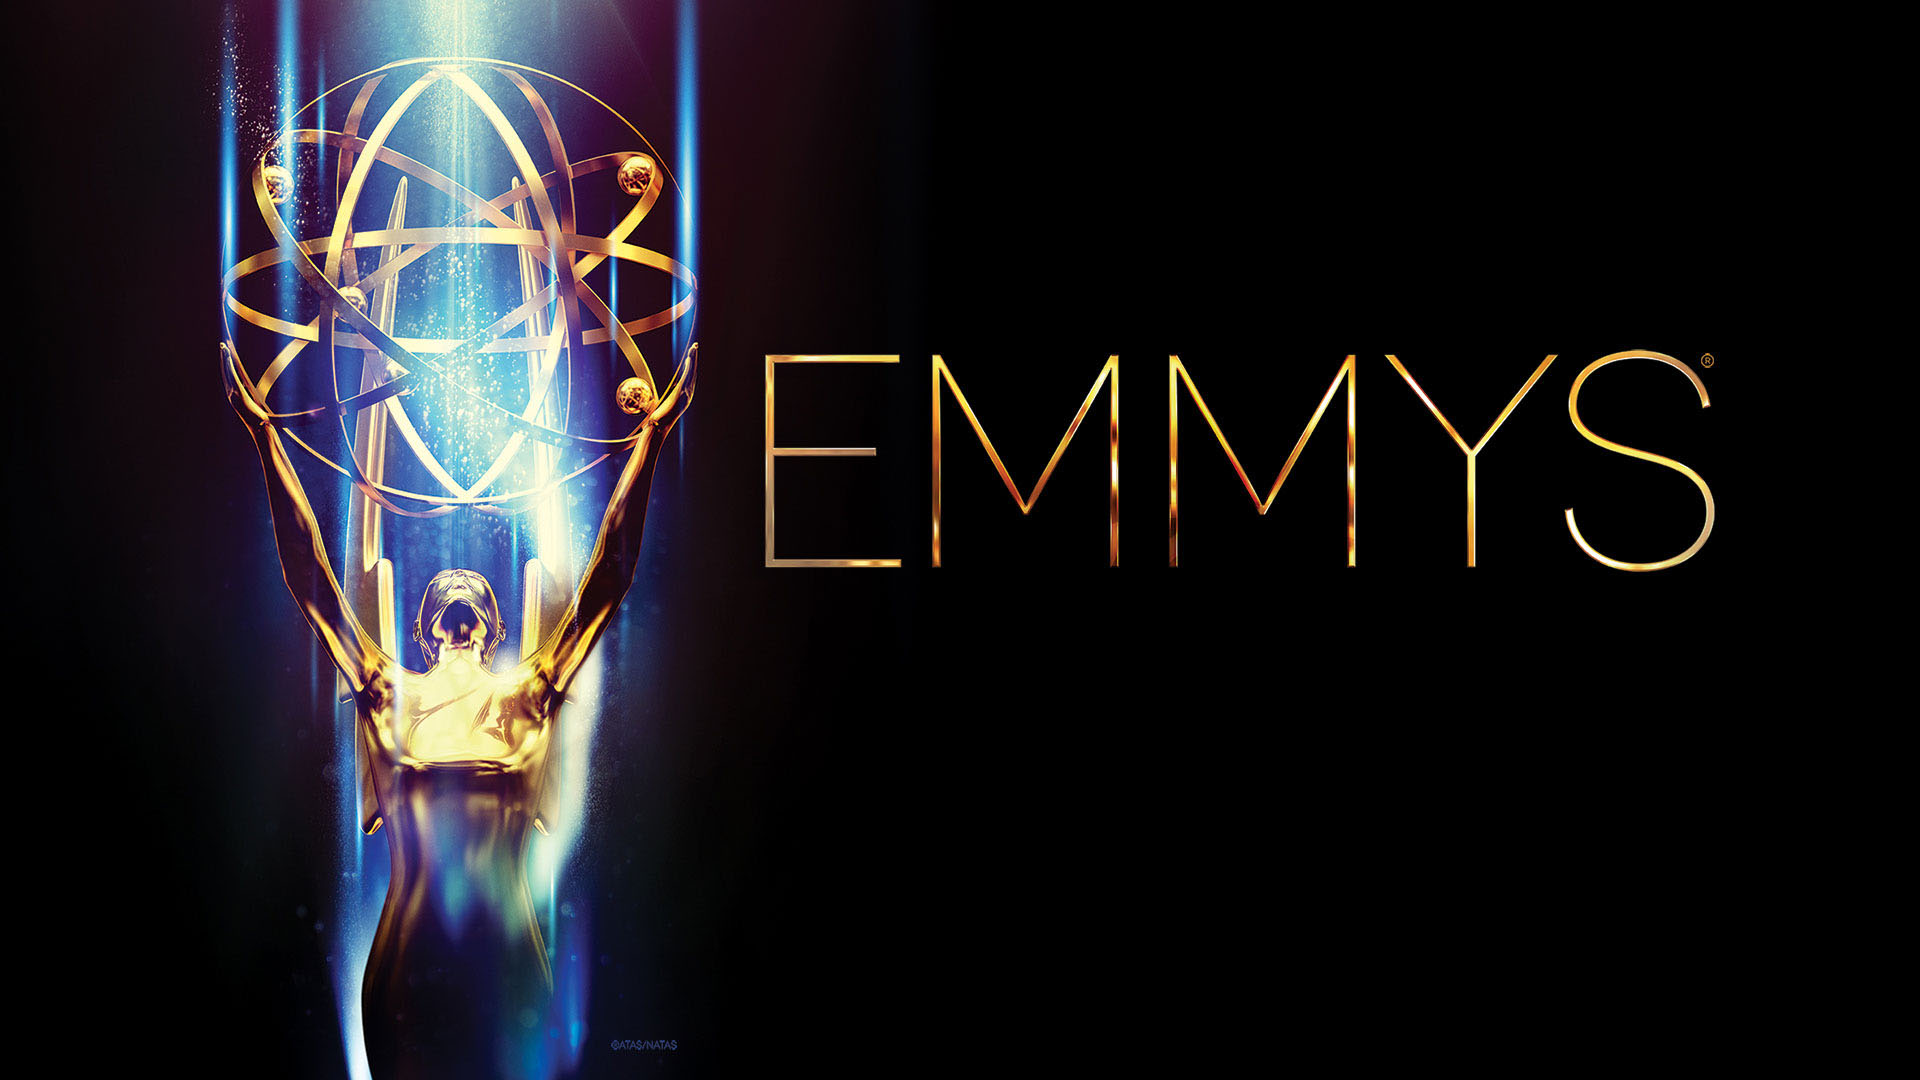 Ya se acerca la entrega #75 de los premios Emmy